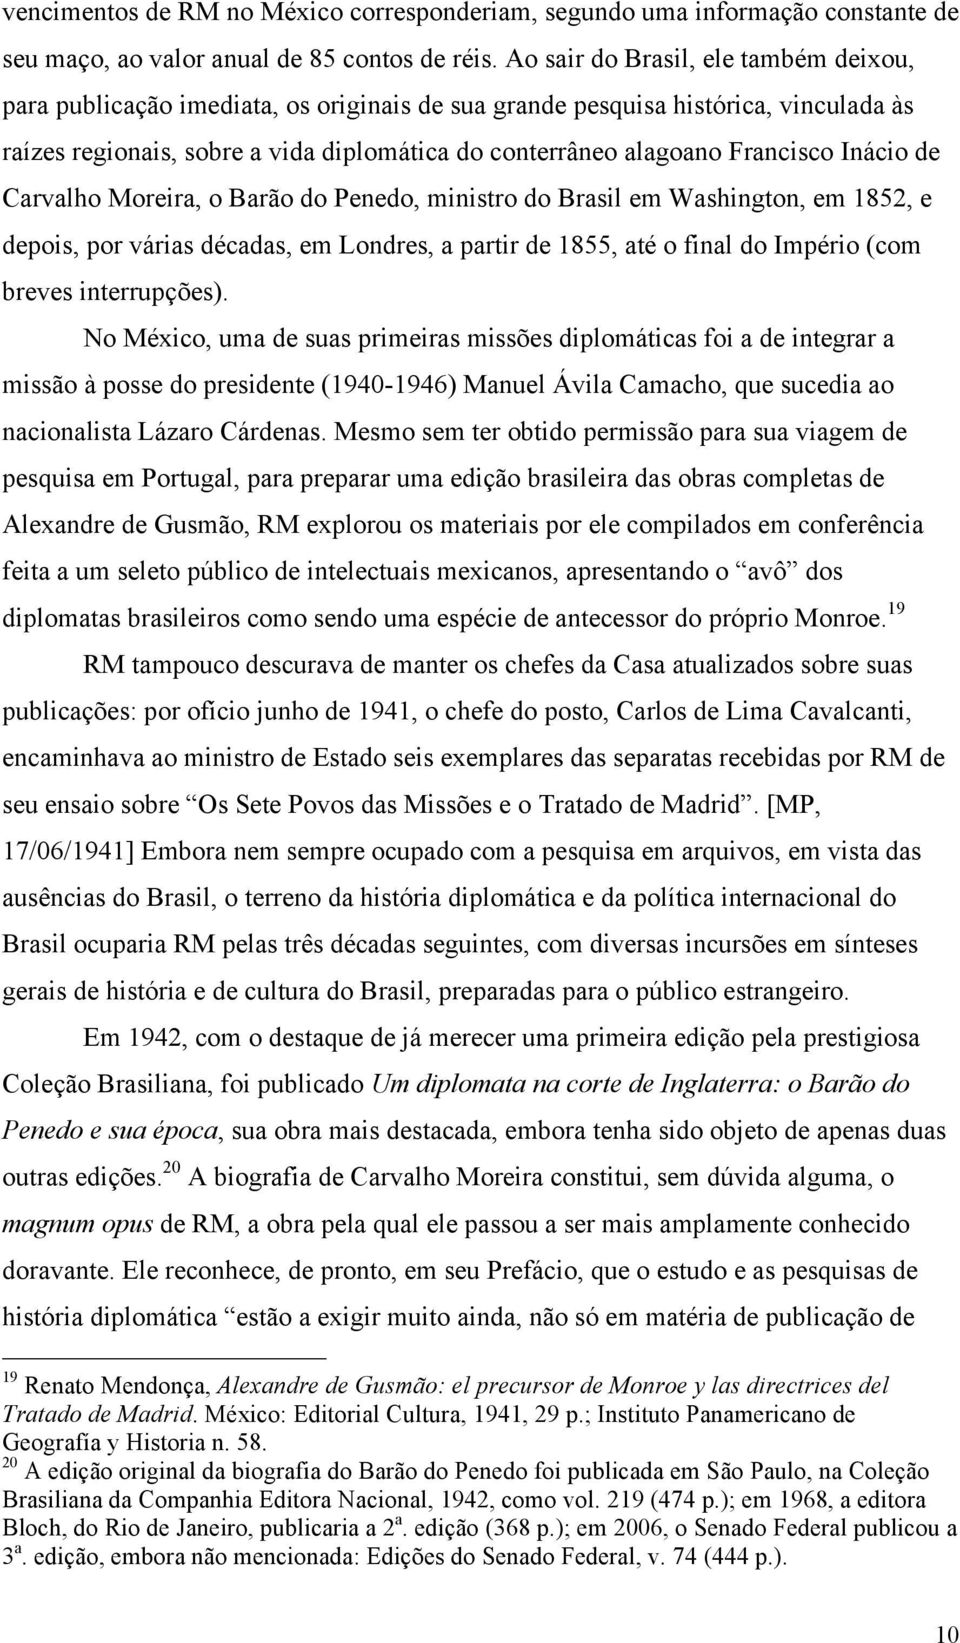 Francisco Inácio de Carvalho Moreira, o Barão do Penedo, ministro do Brasil em Washington, em 1852, e depois, por várias décadas, em Londres, a partir de 1855, até o final do Império (com breves